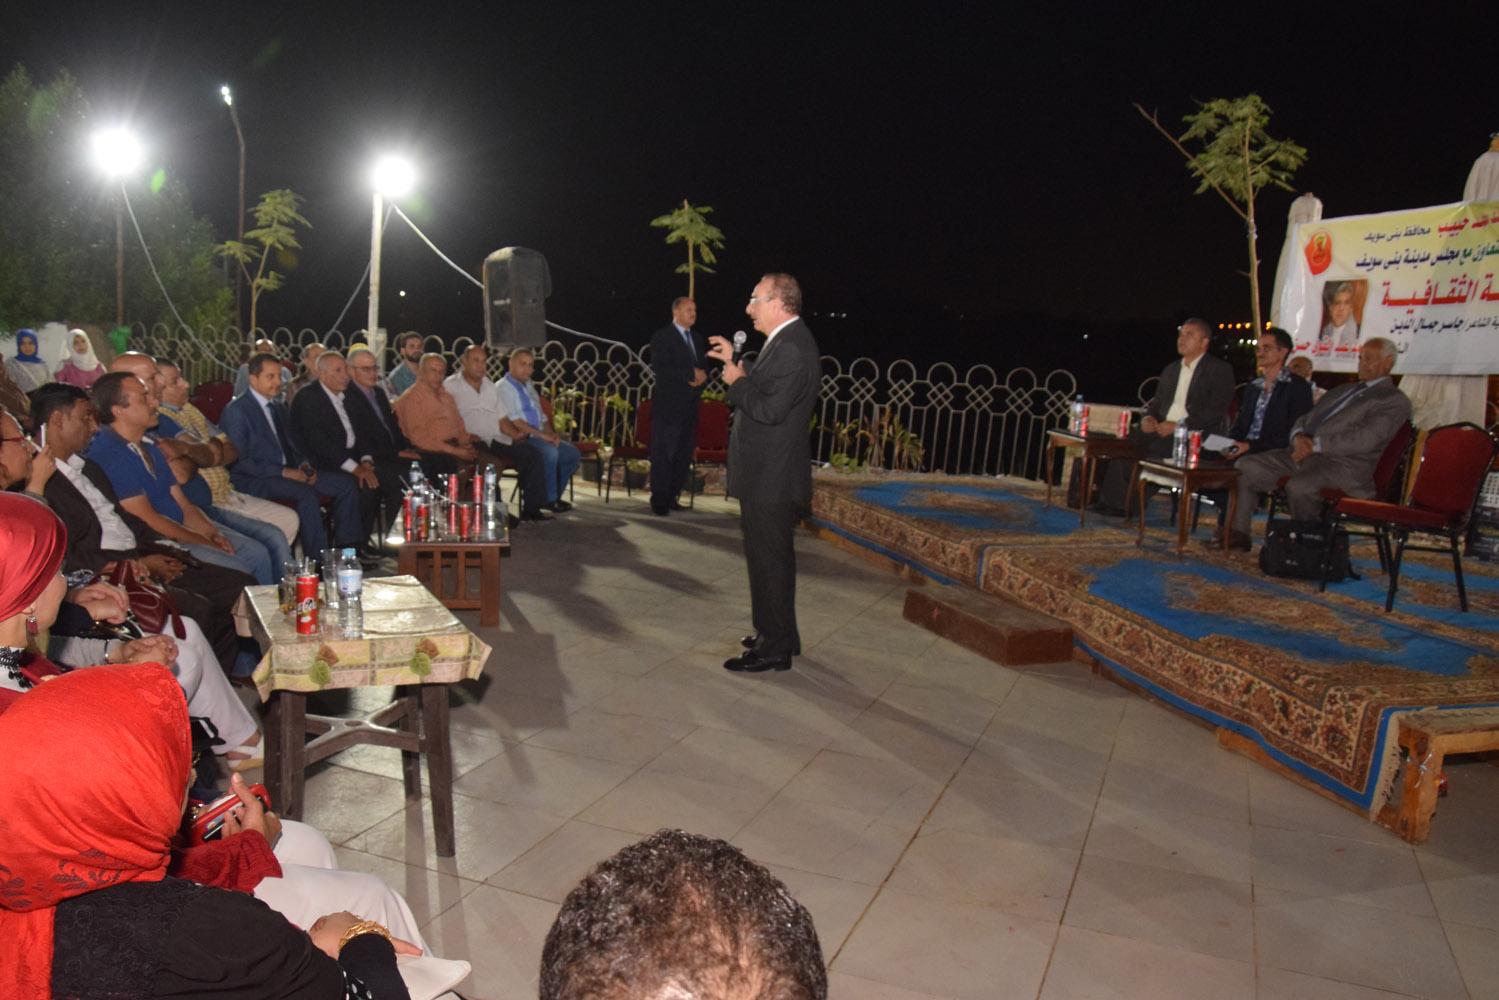   محافظ بني سويف خلال حضوره أمسية ثقافية يفتح حوارًا مع المواطنين